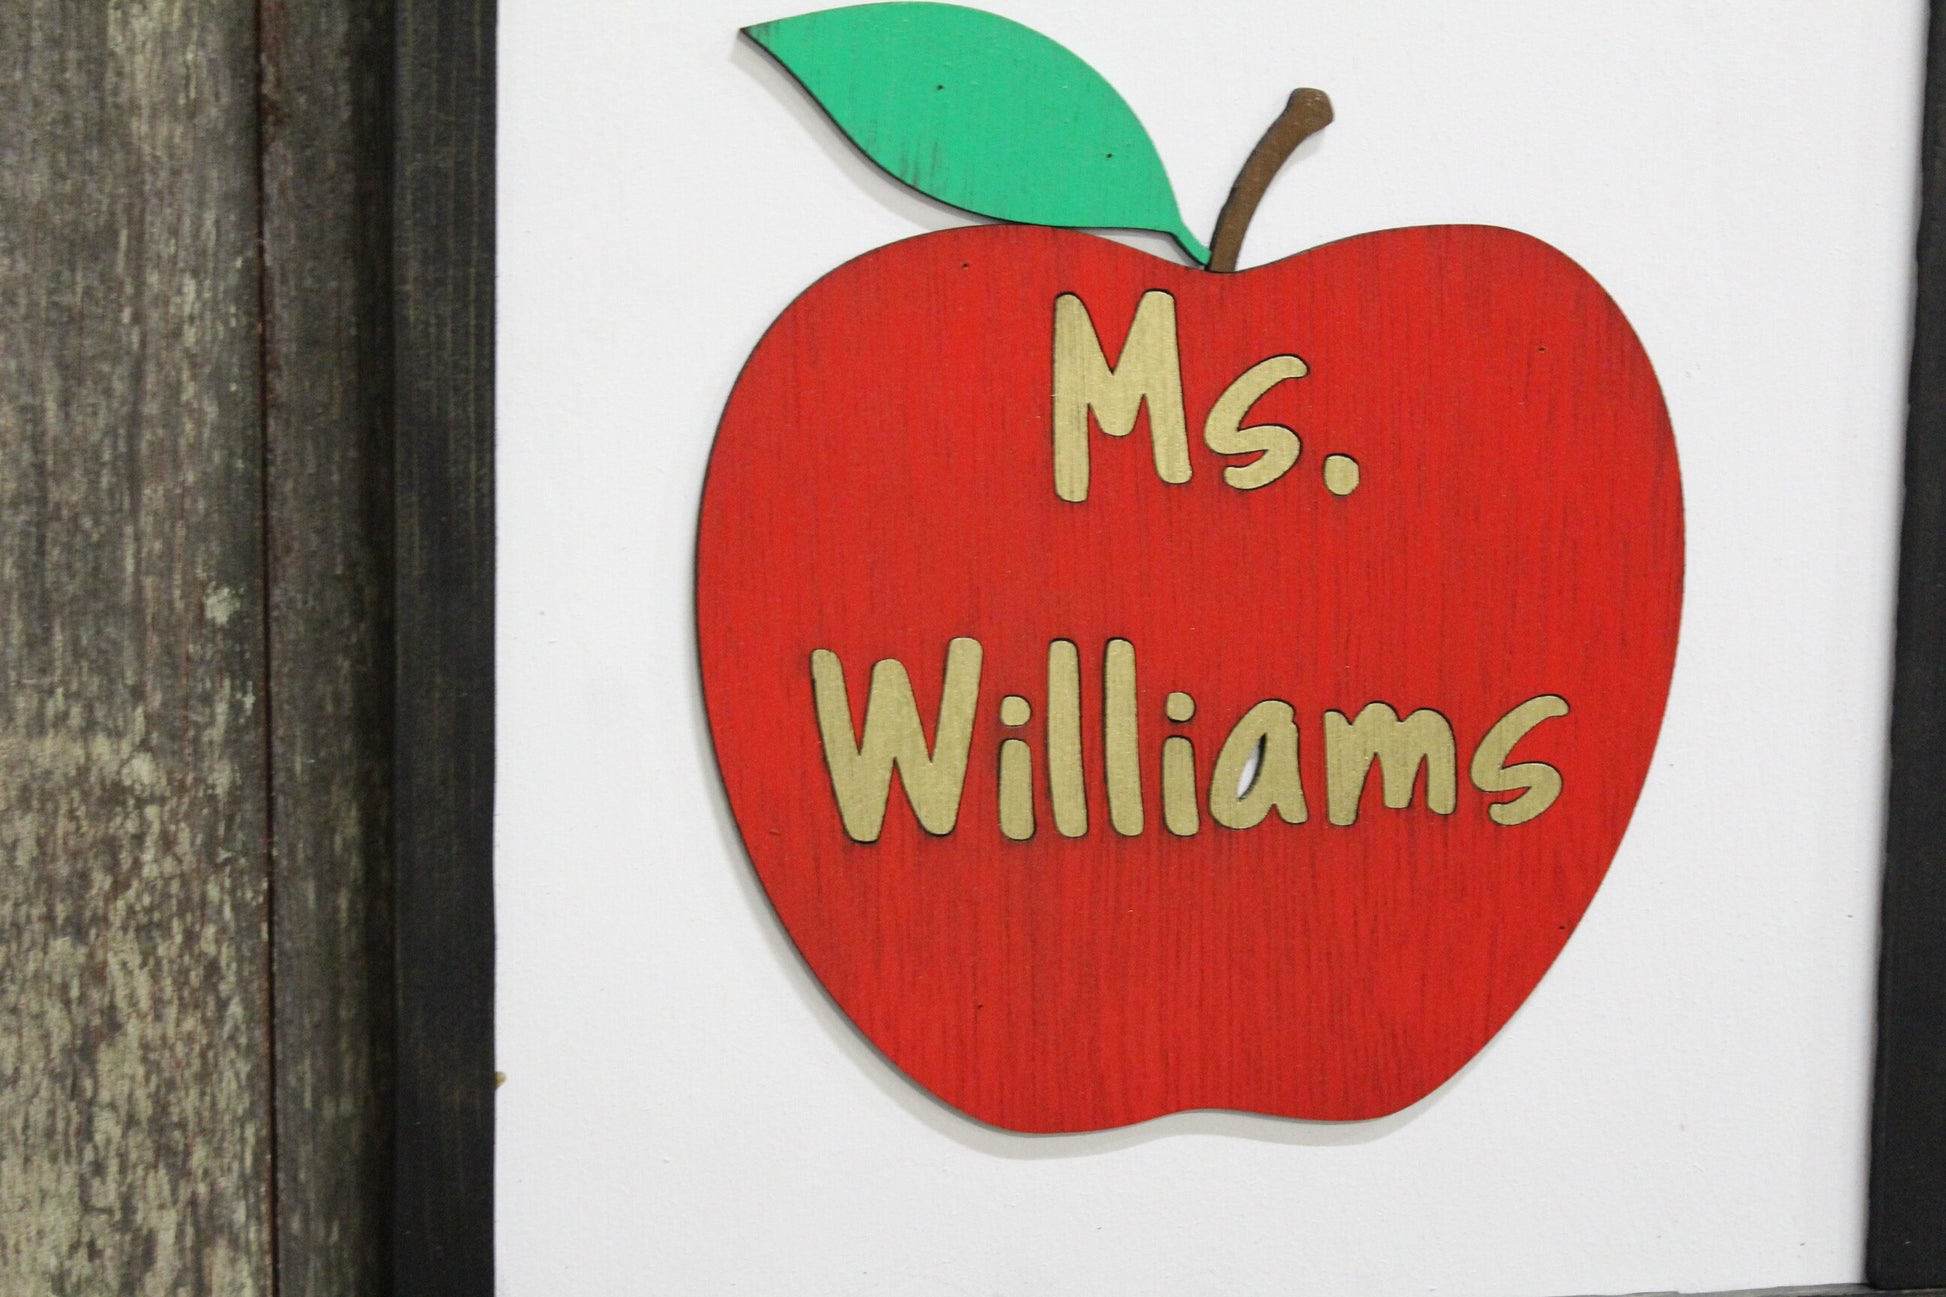 Custom Teachers Gift Personalized Apple with Teachers Name 3D Raised Décor Decoration Wall Art Farmhouse Rustic Handmade Framed